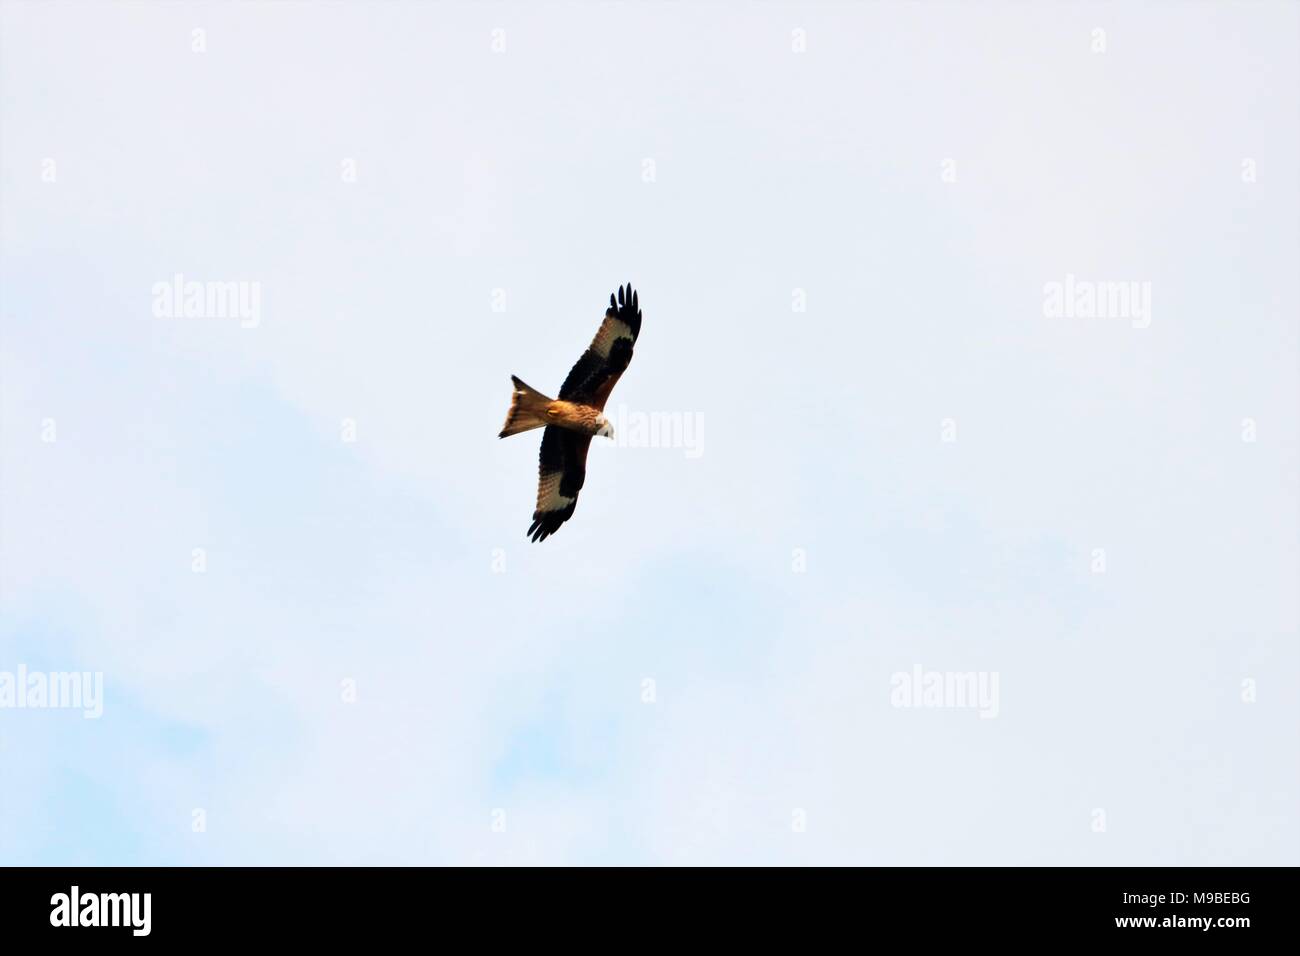 Red Kite bird flying in sky Stock Photo